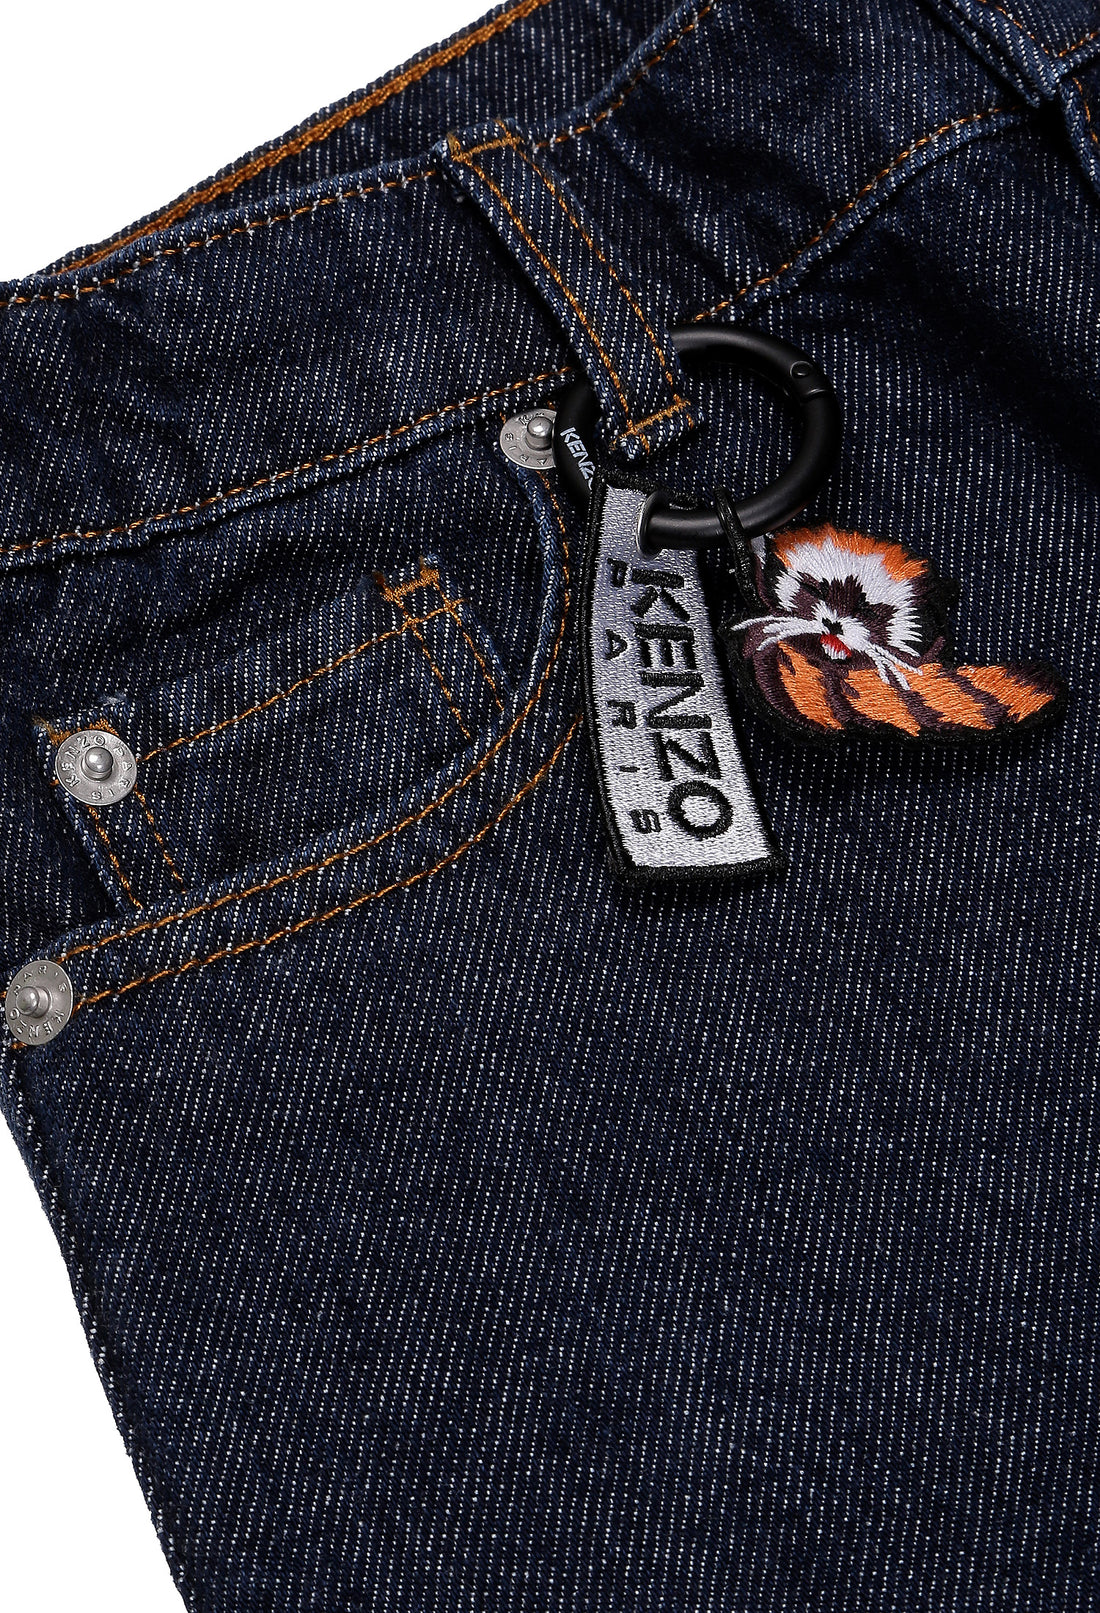 Spodnie jeansowe granatowe Kenzo KENZO KIDS 123 K54002 123/9Q